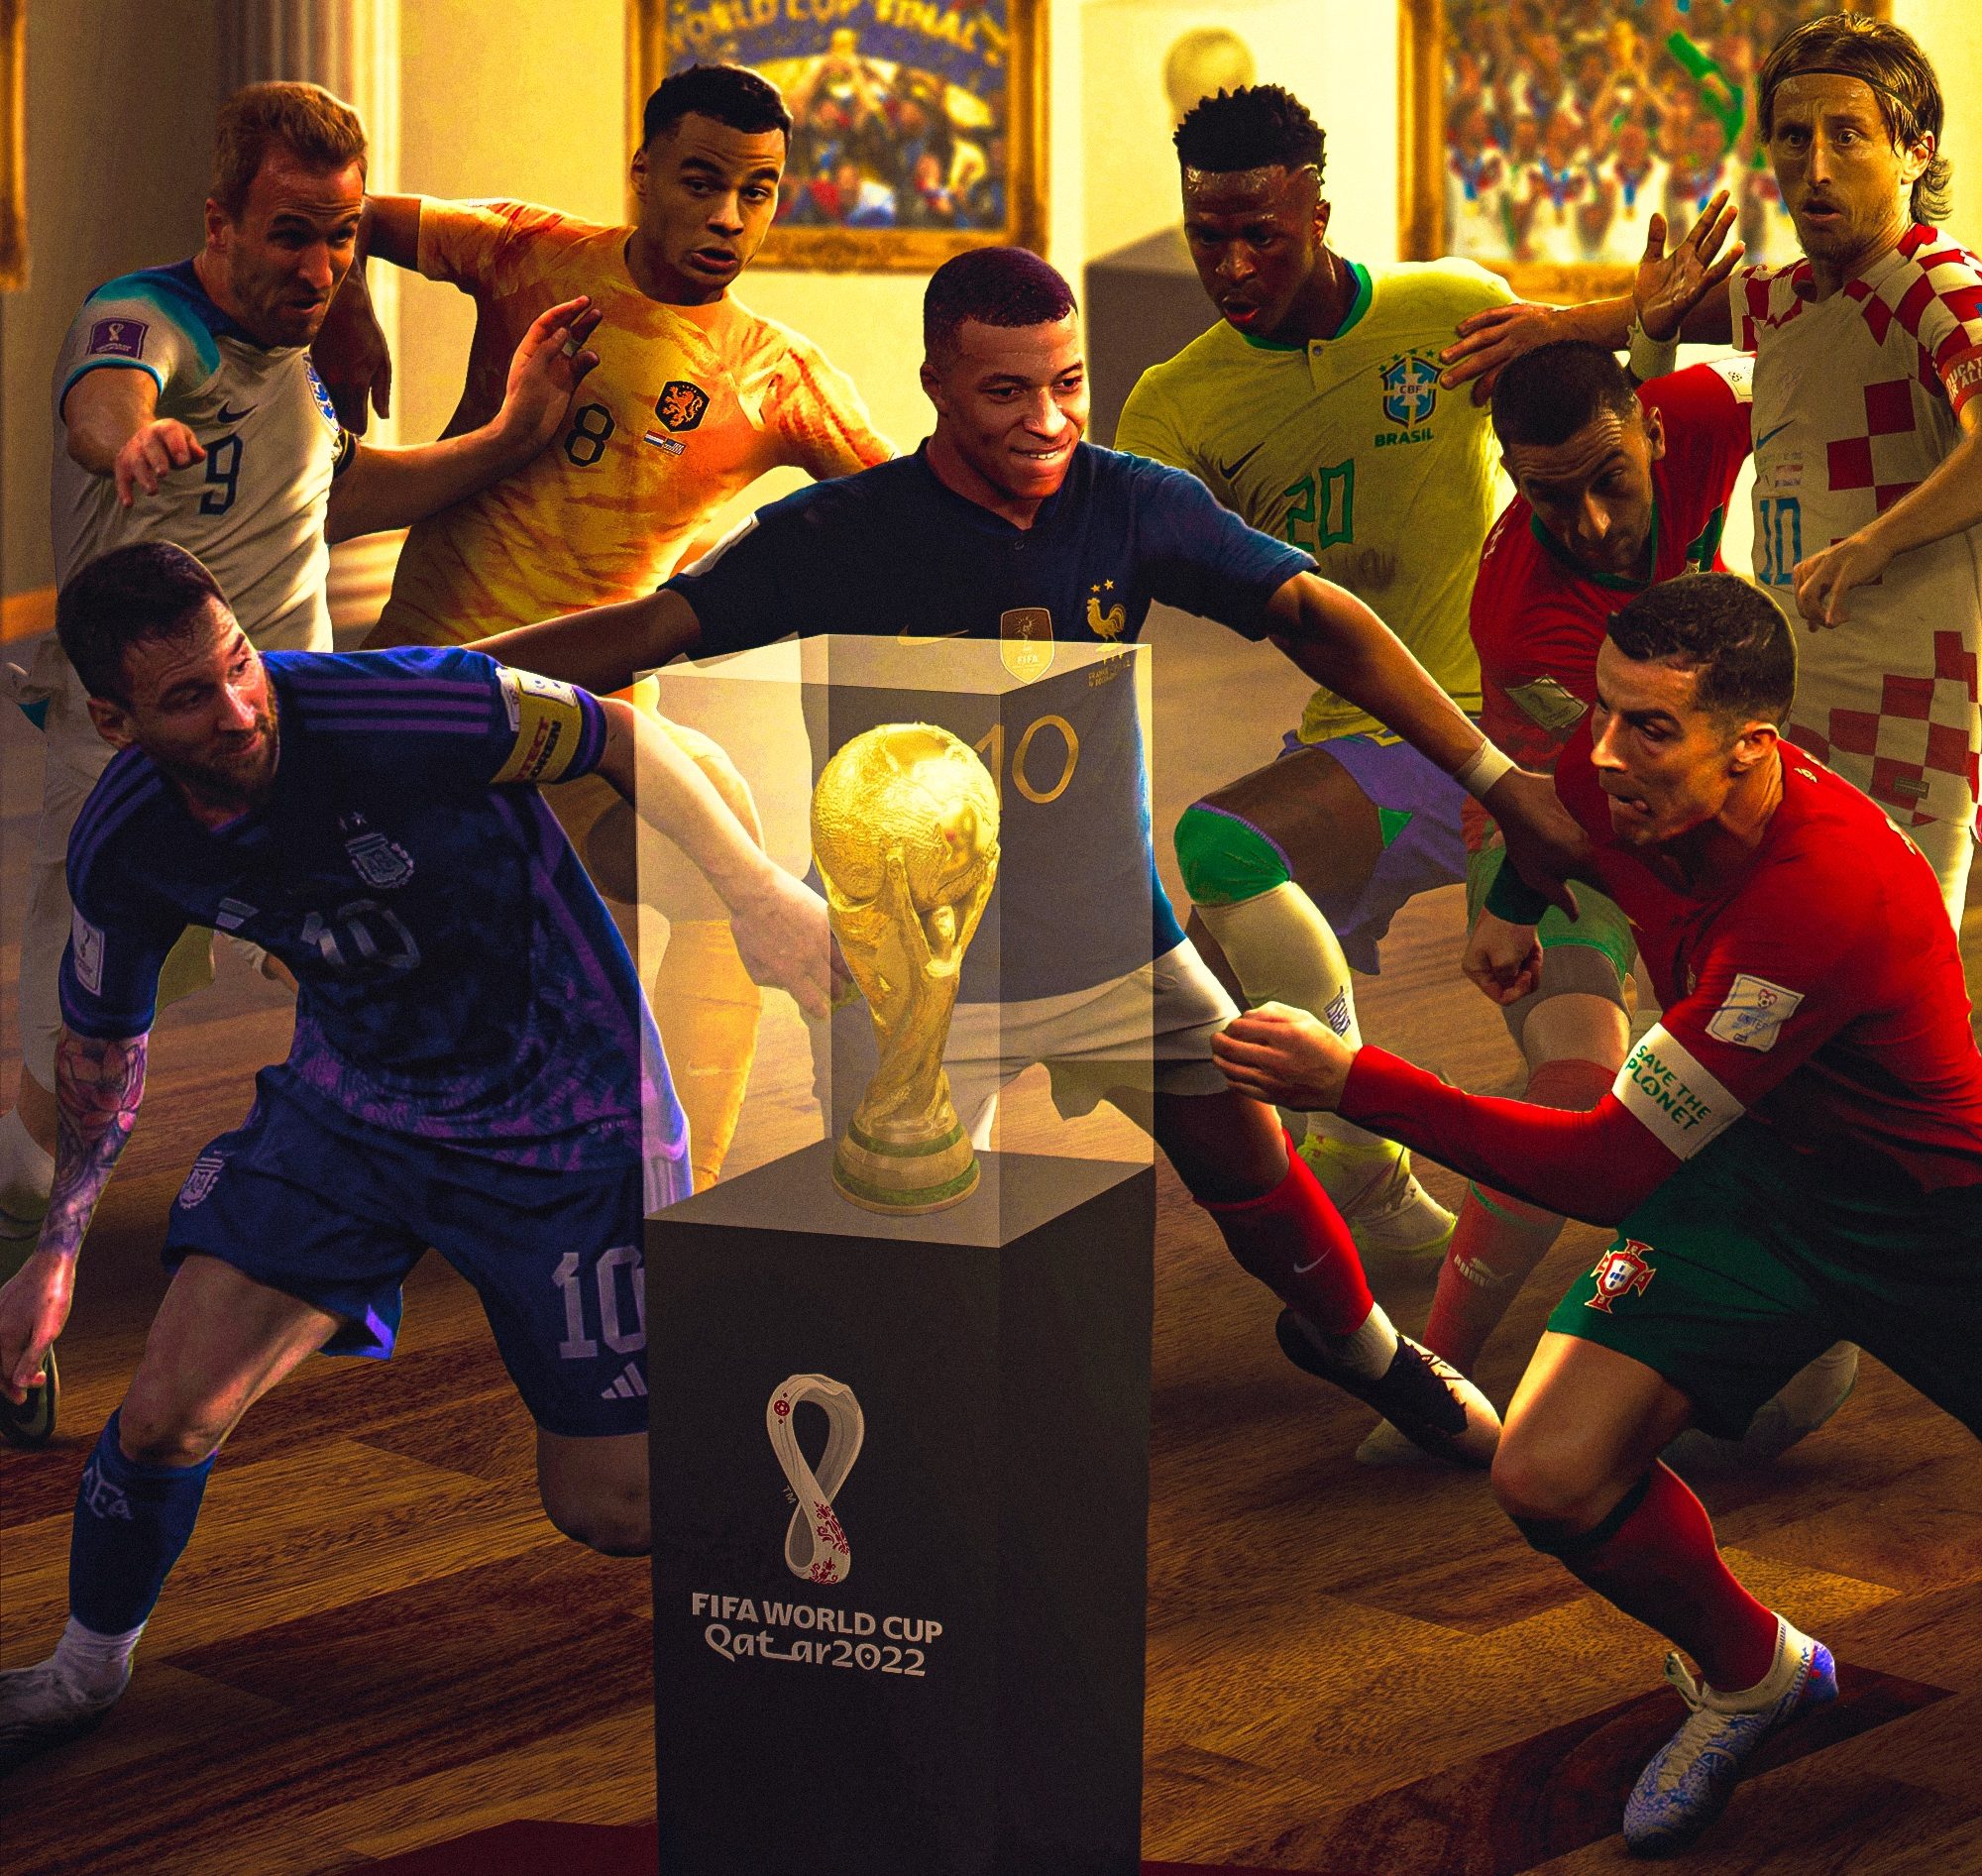 FIFA World Cup 2020 Quarter Finals